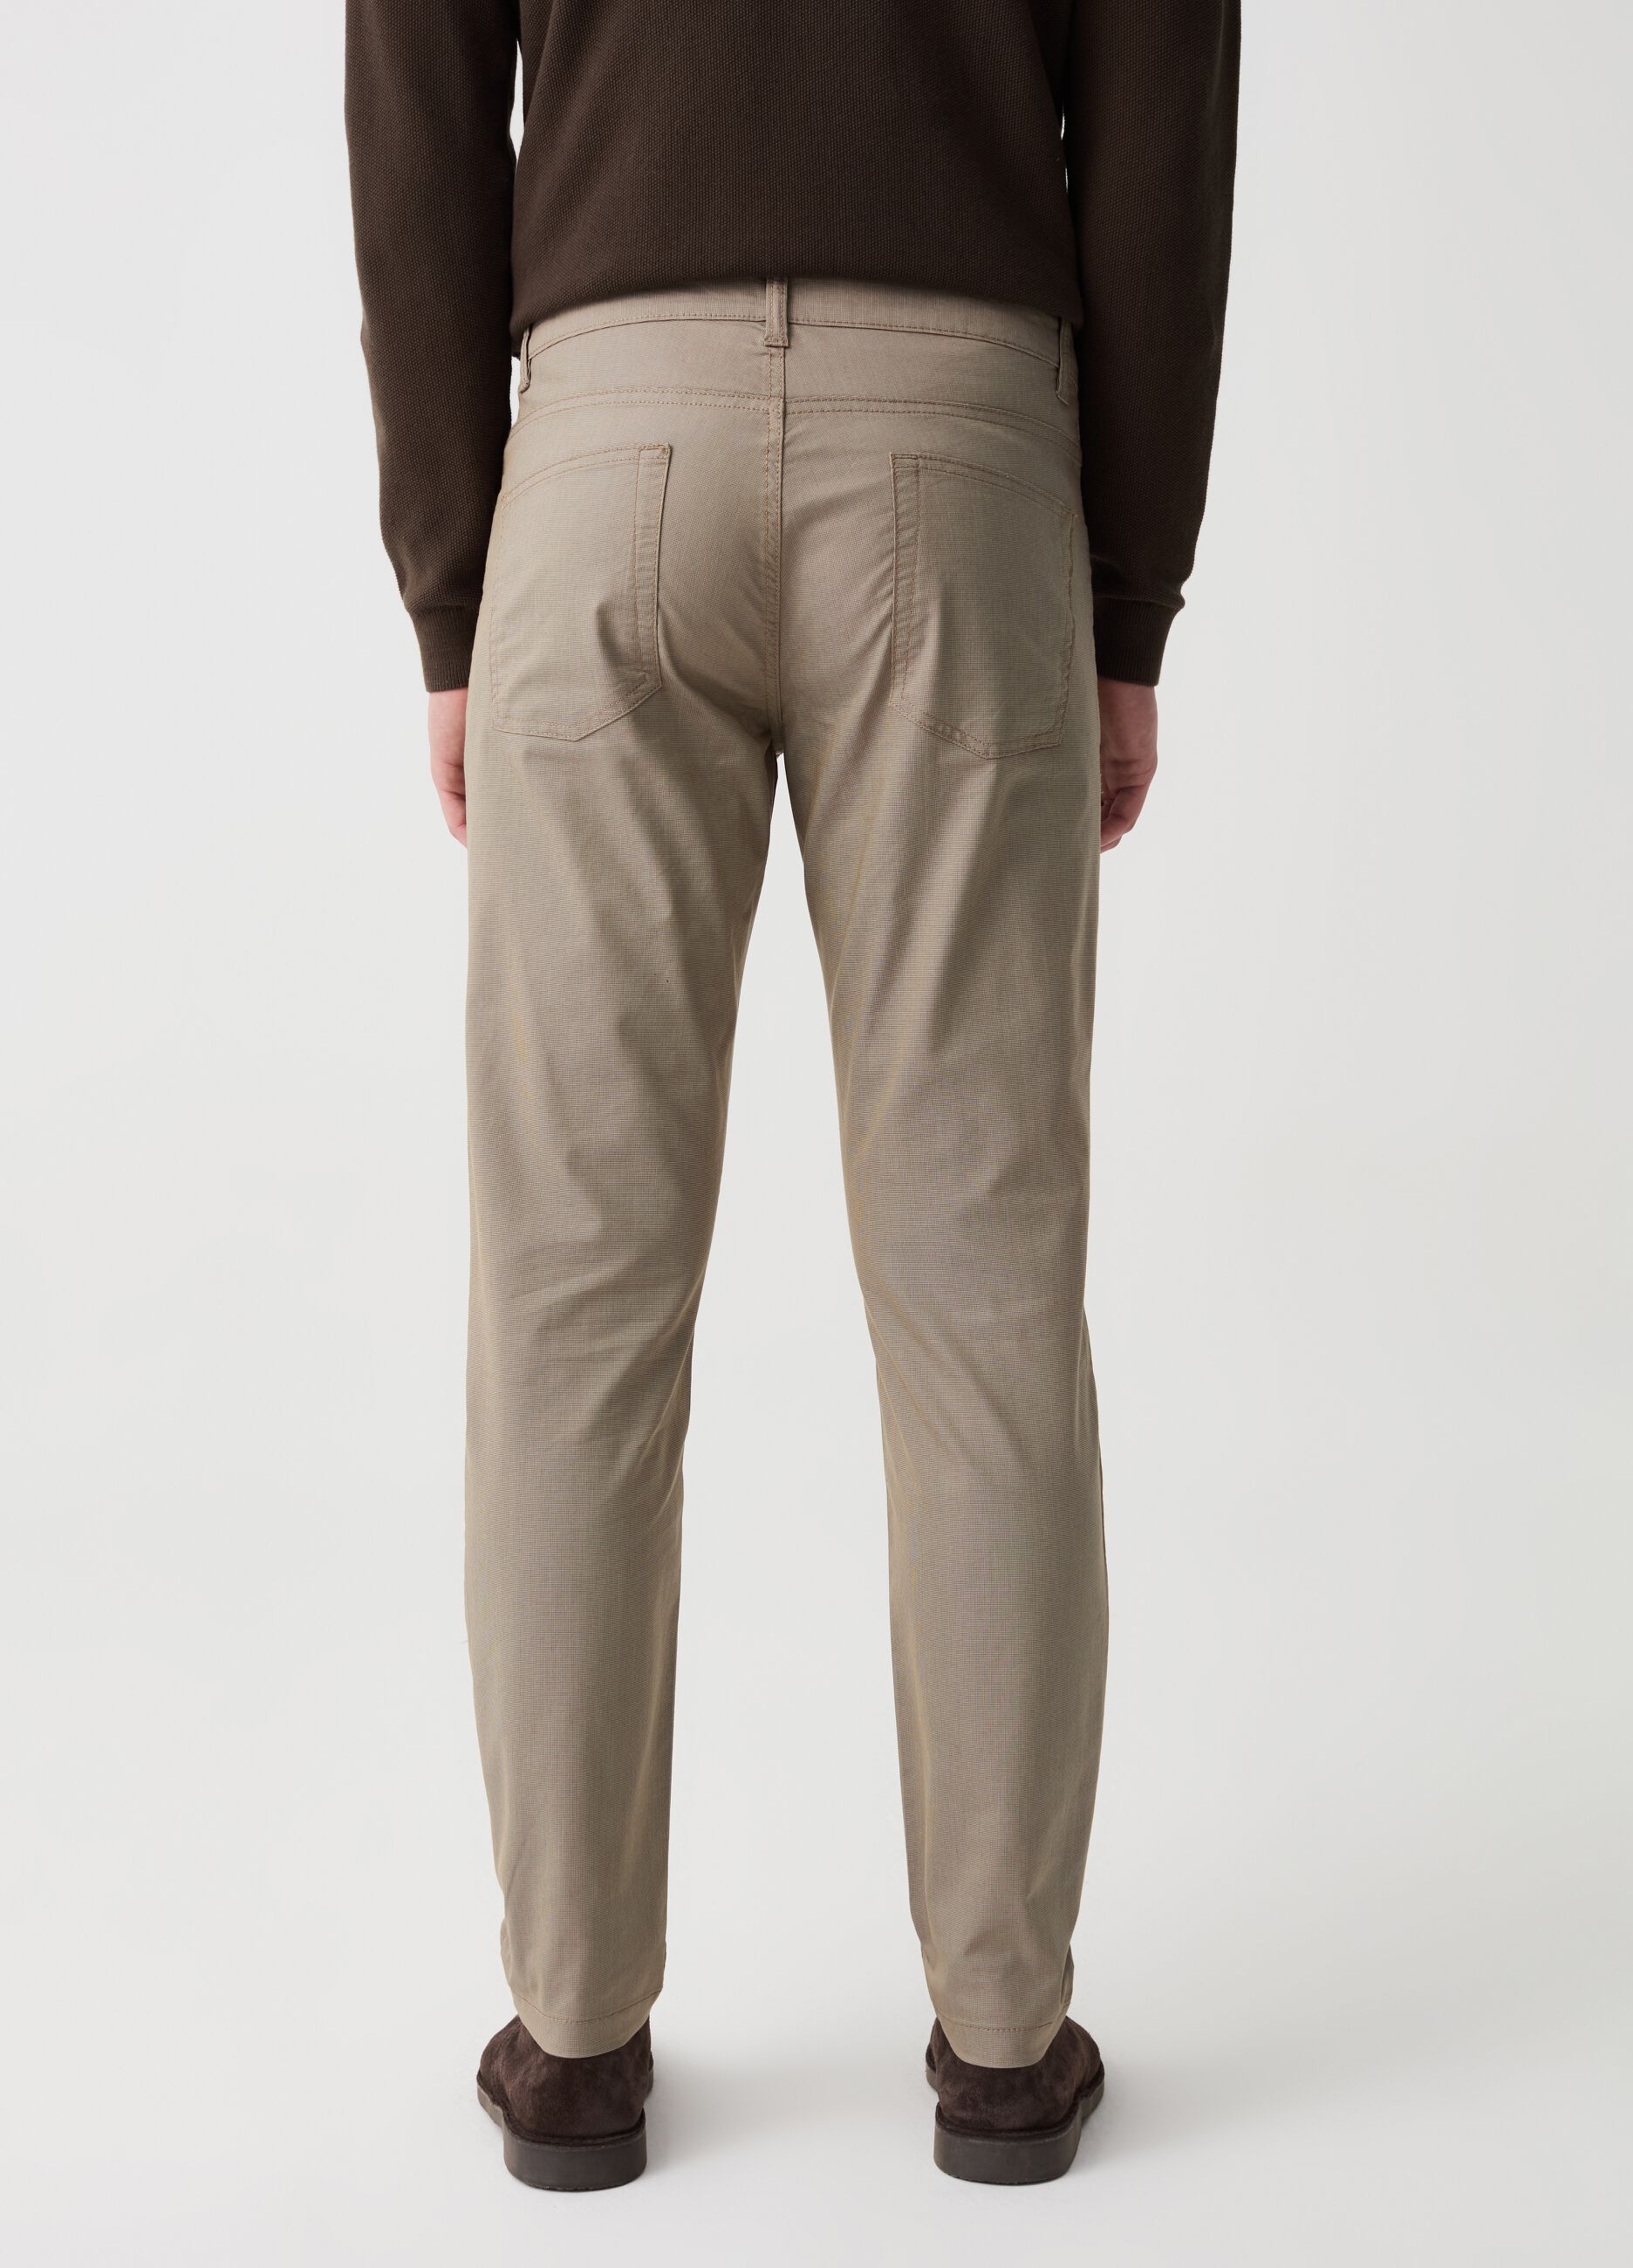 Pantalone cinque tasche con micro trama